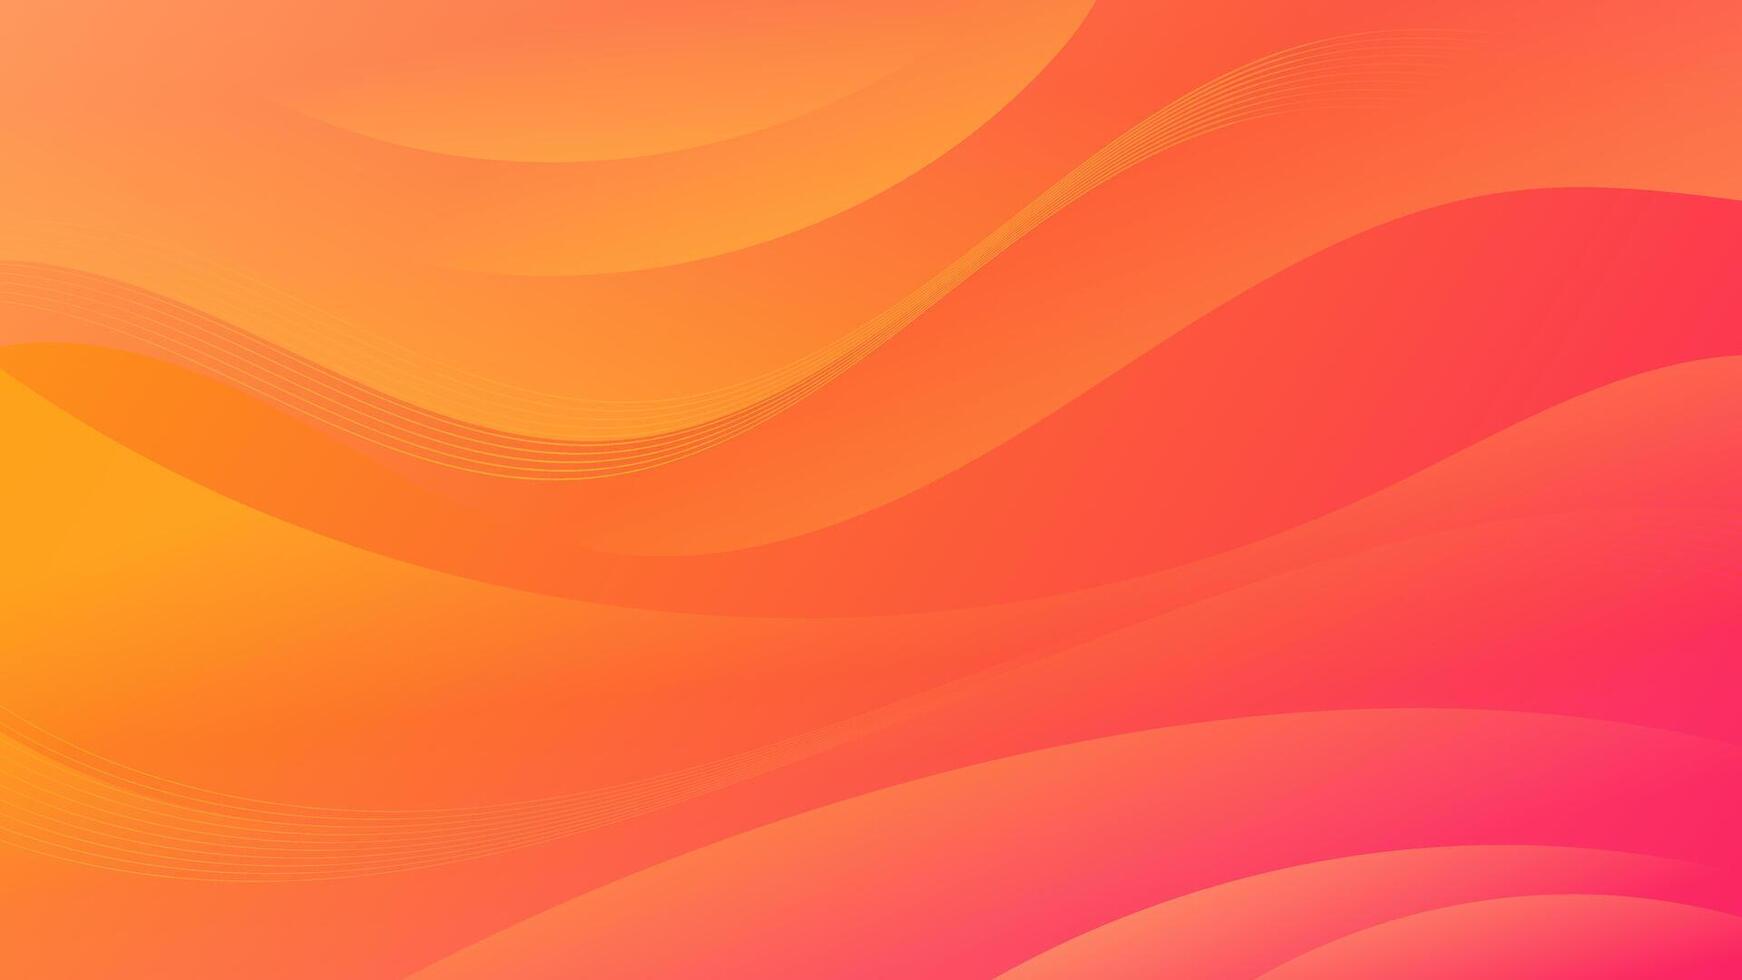 een boeiend mengsel van oranje en rood helling golven definieert deze abstract achtergrond, maken het een veelzijdig Bedrijfsmiddel voor websites, flyers, affiches, en digitaal kunst projecten vector